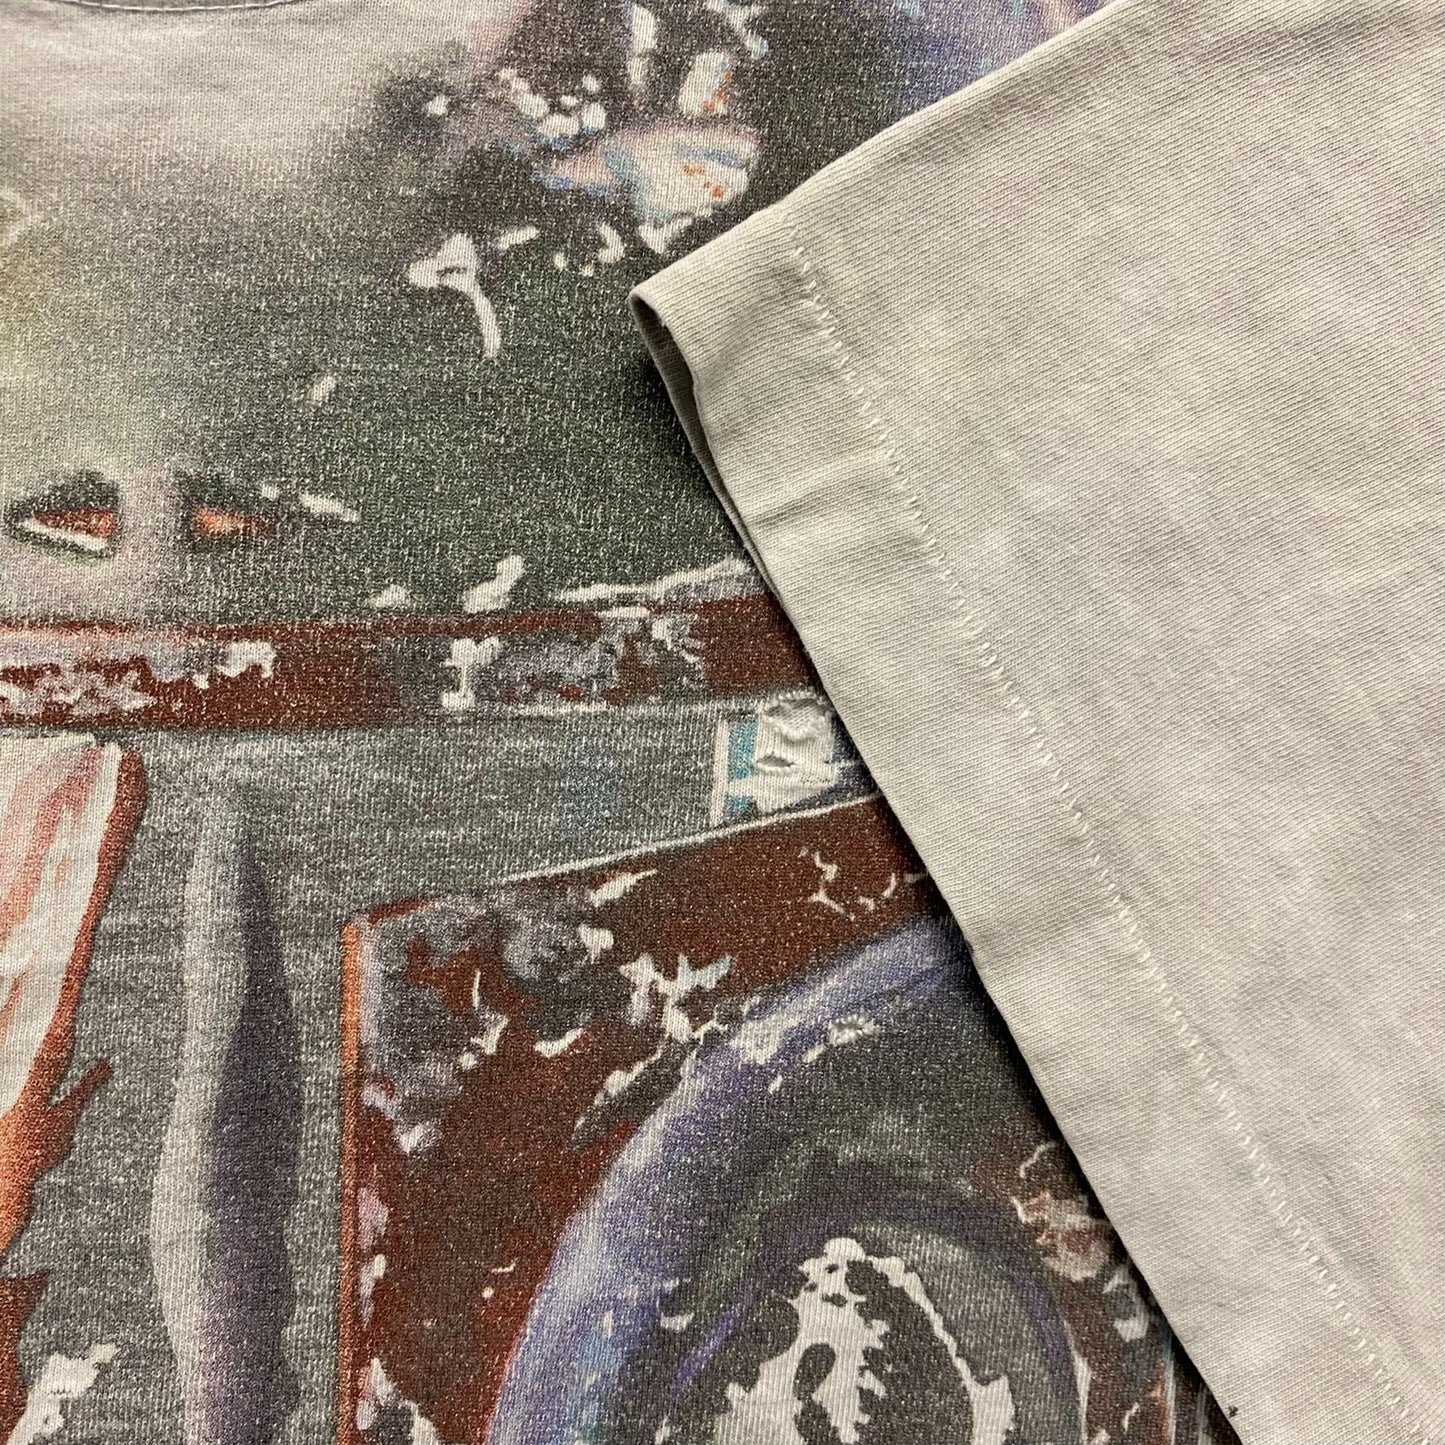 Liquid Blue Star Wars Boba Fett Vintage T-Shirt